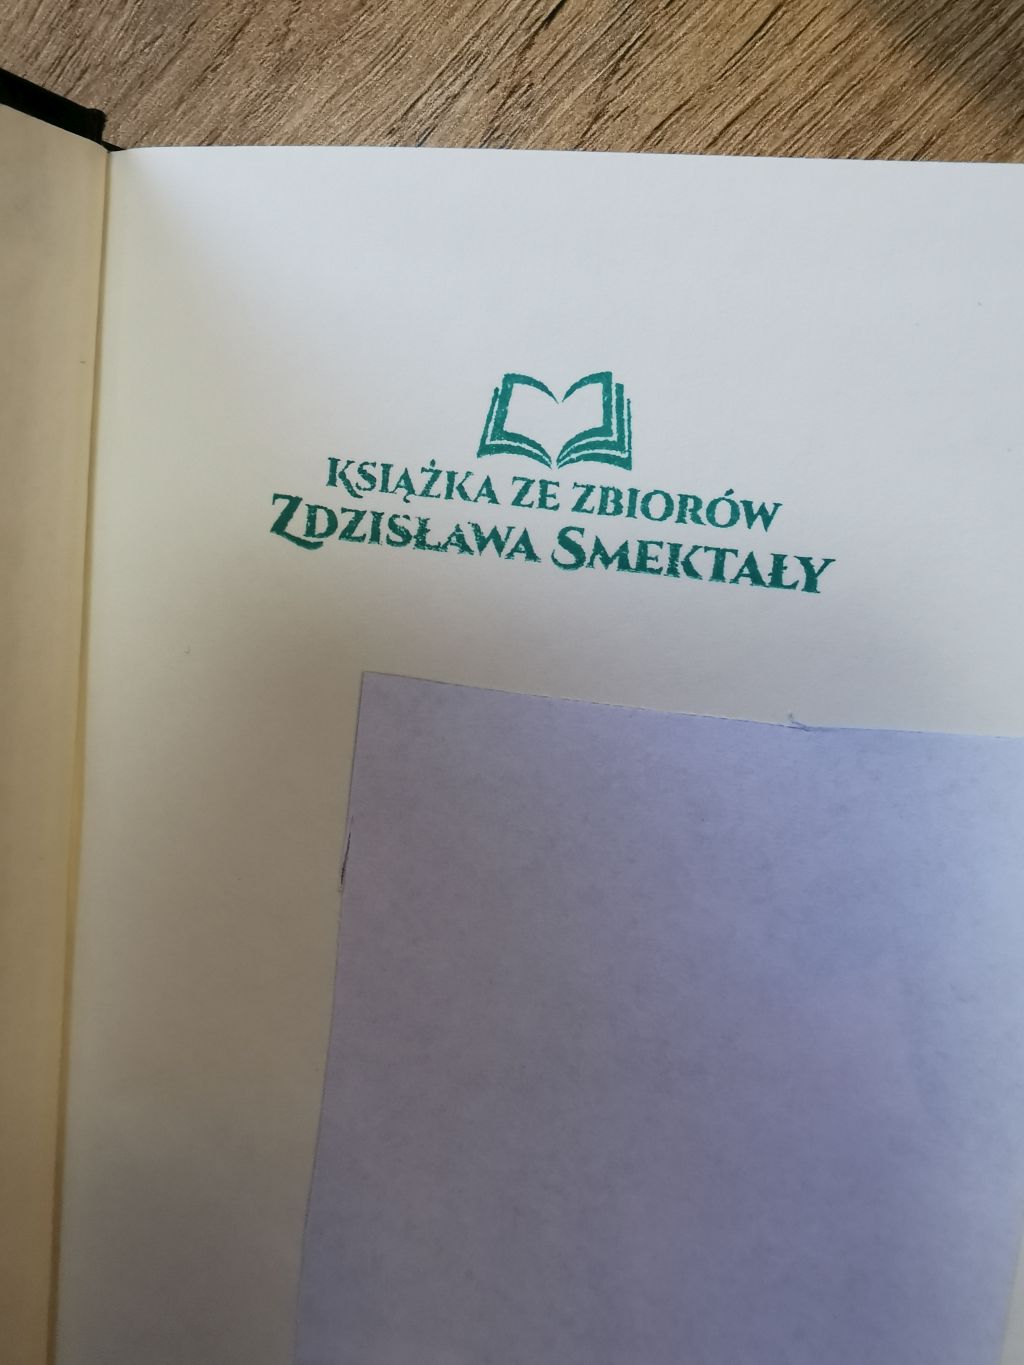 Książka z księgozbioru Zdzisława Smektały z okazjonalną pieczęcią „Książka ze zbiorów Zdzisława Smektały”. Zdjęcie jest odnośnikiem do wpisu 